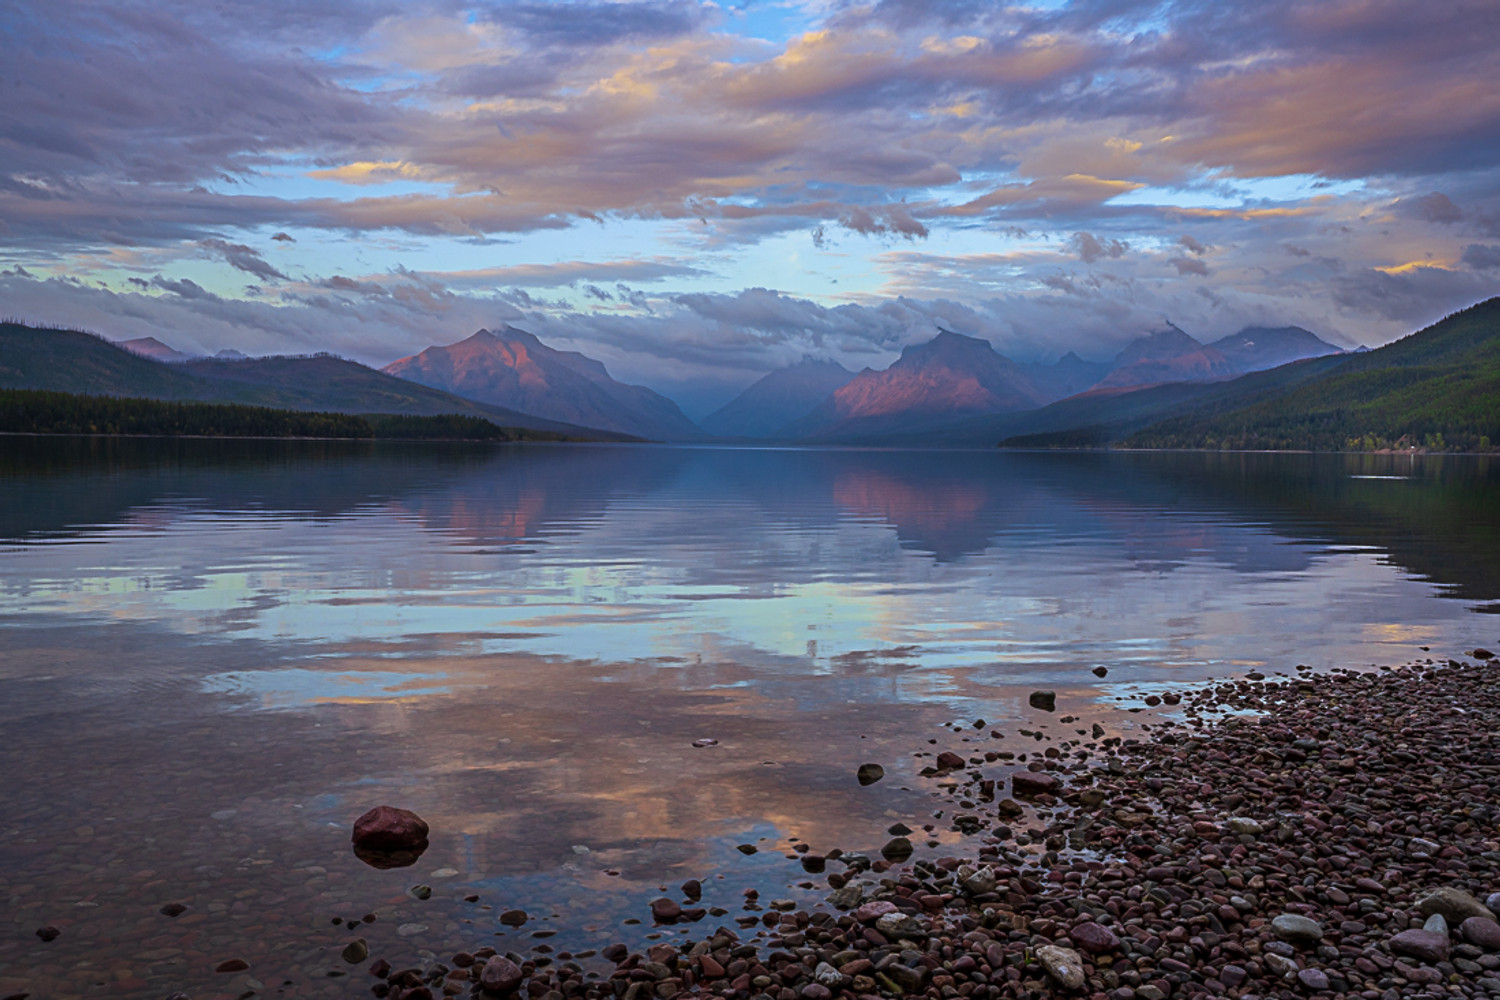  Lake McDonald - The Vanishing of Light at Nightfall